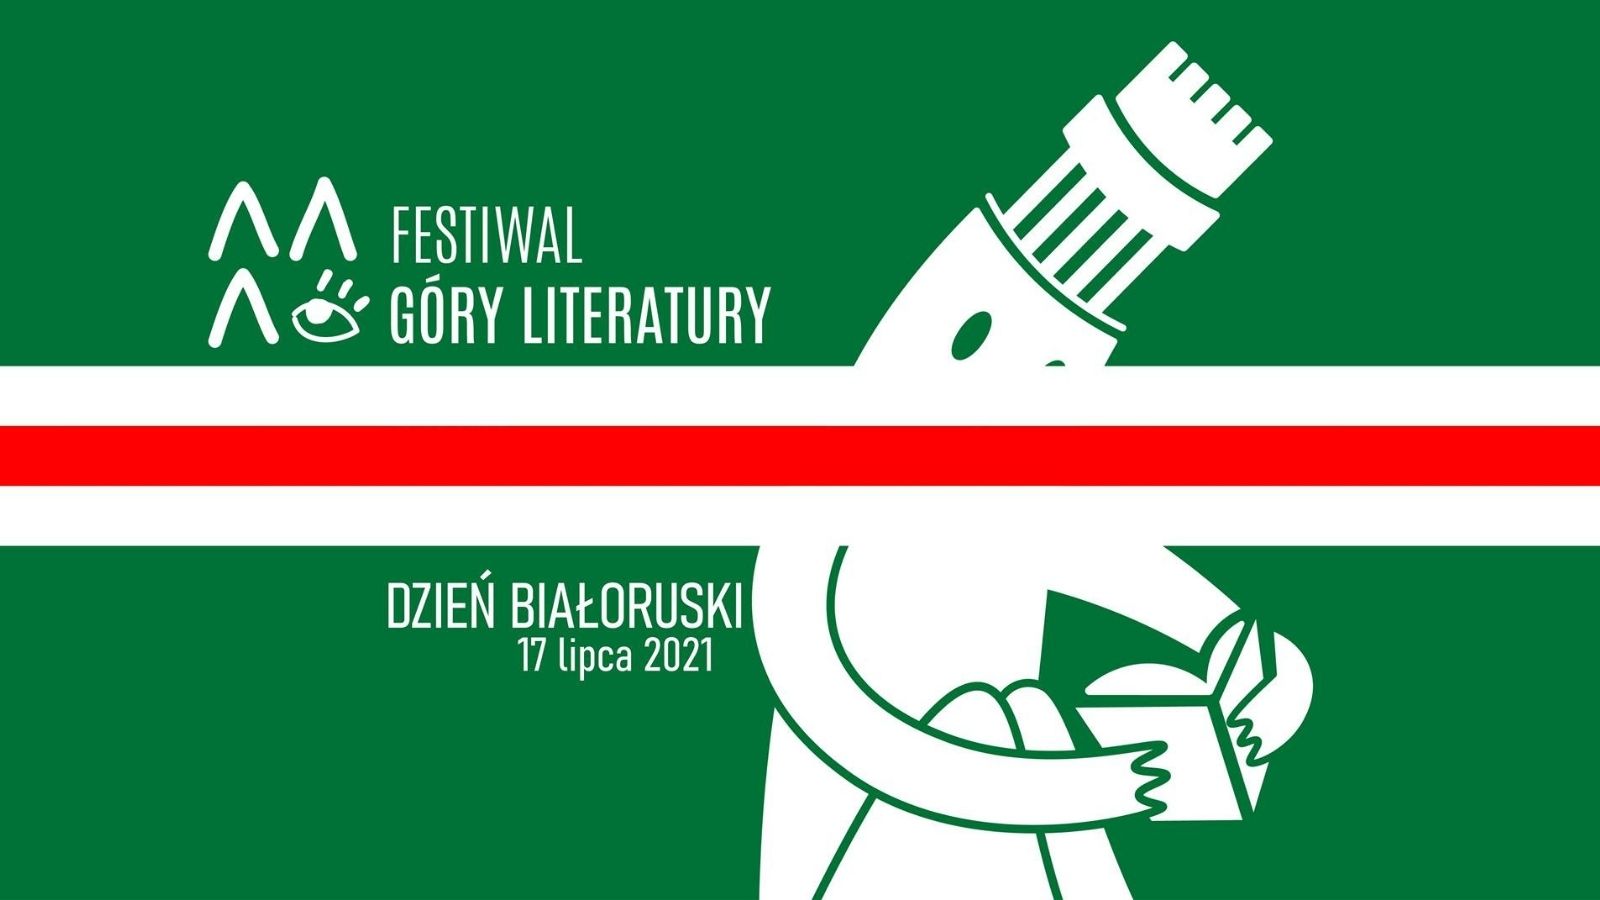 Dzień Białoruski na Festiwalu Góry Literatury